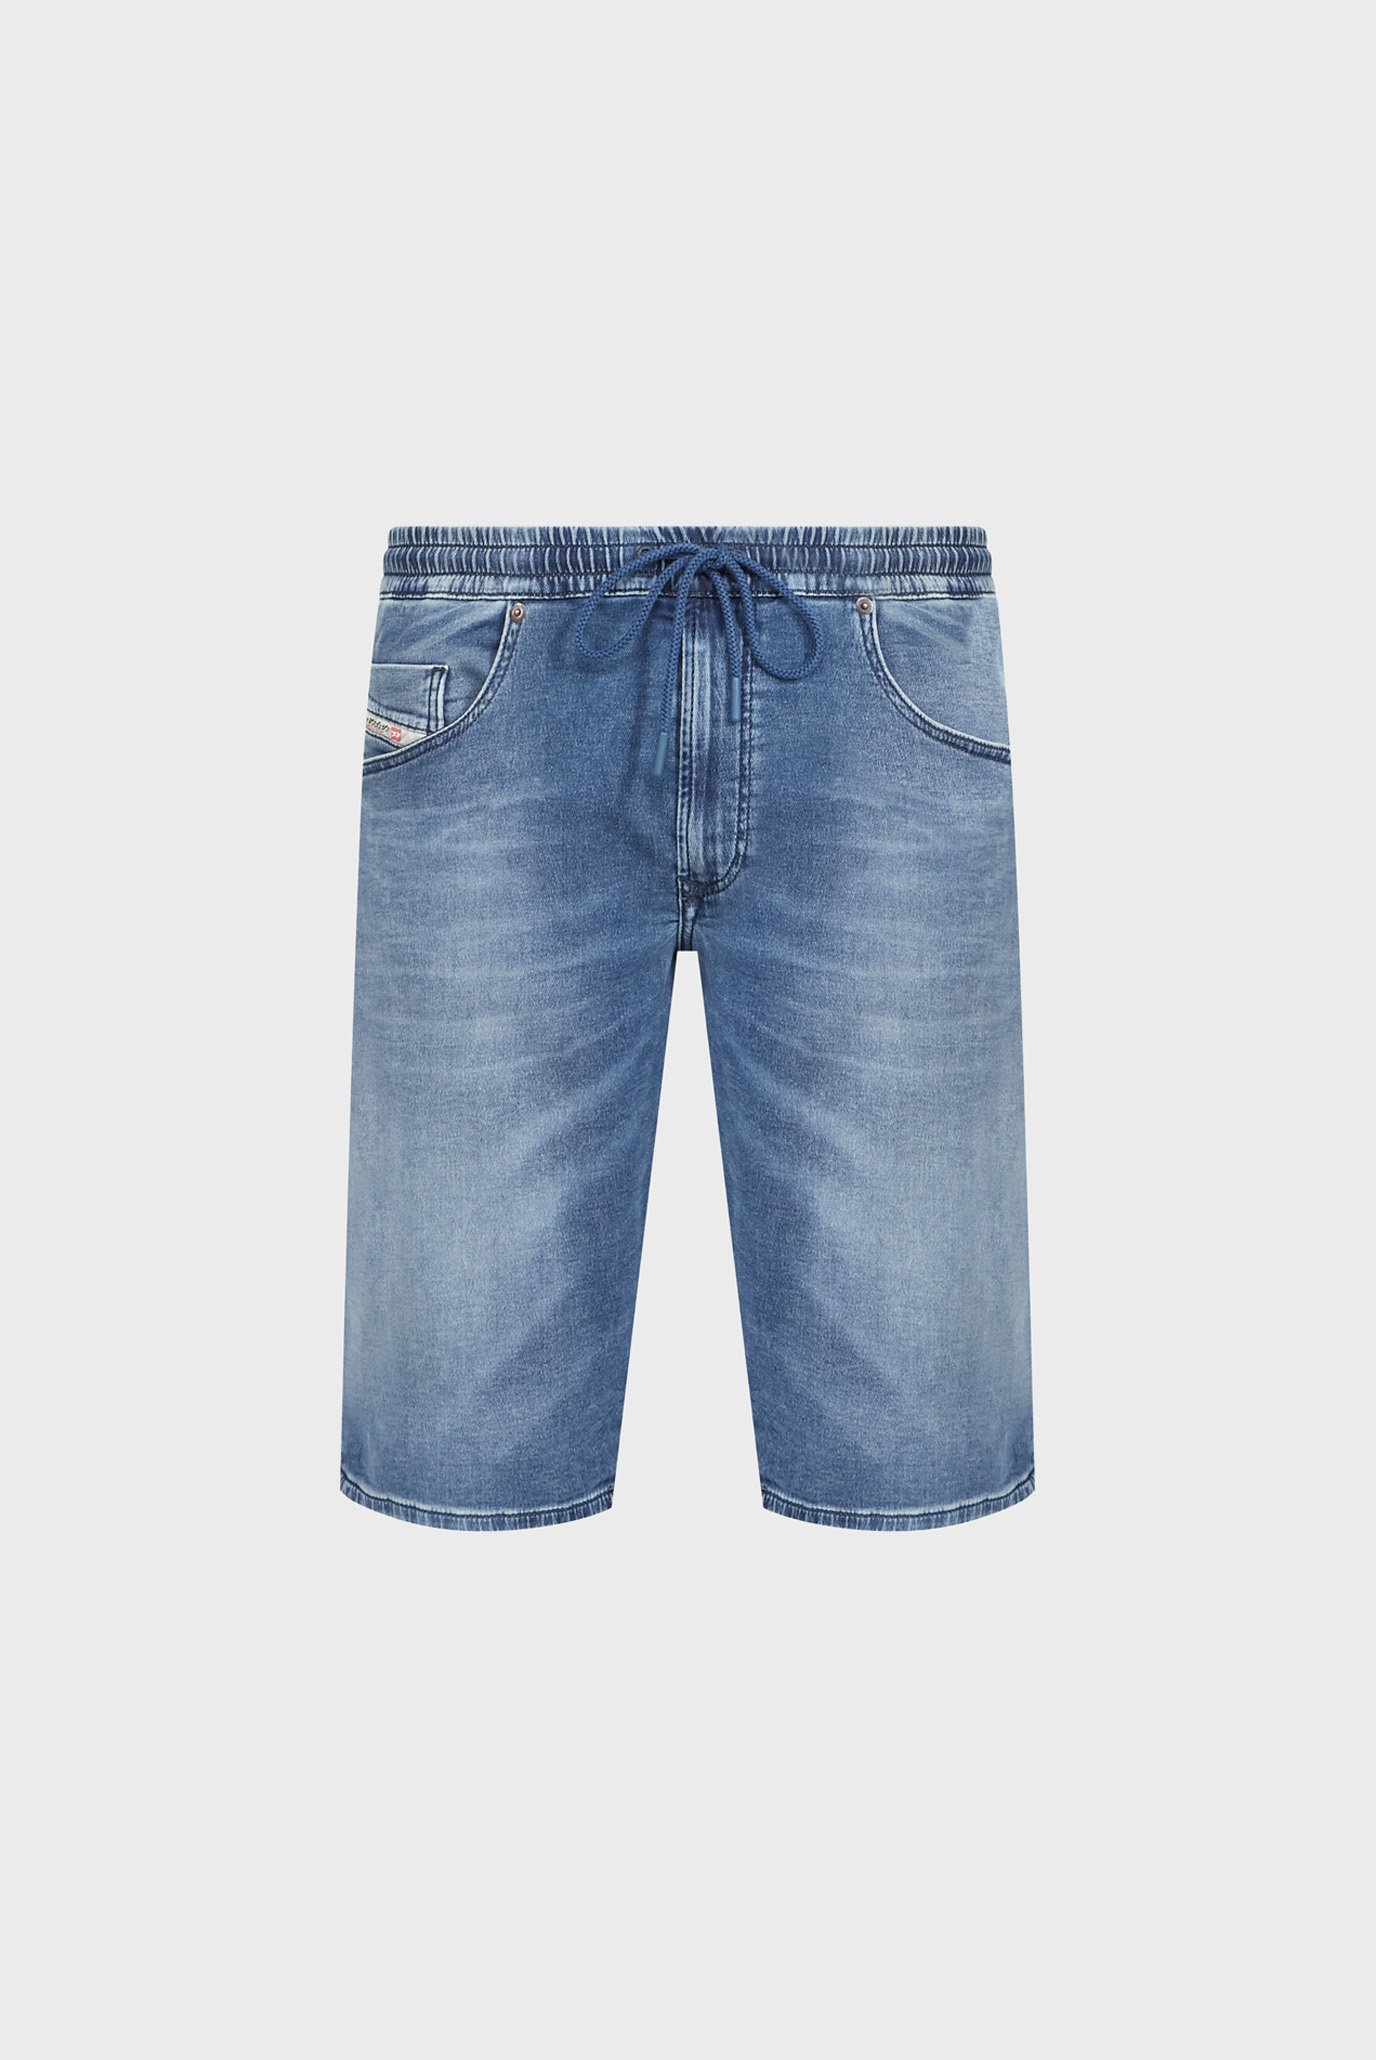 Мужские синие джинсовые шорты 2033 D-KROOLEY-SHORT JOGG CALZONCINI 1